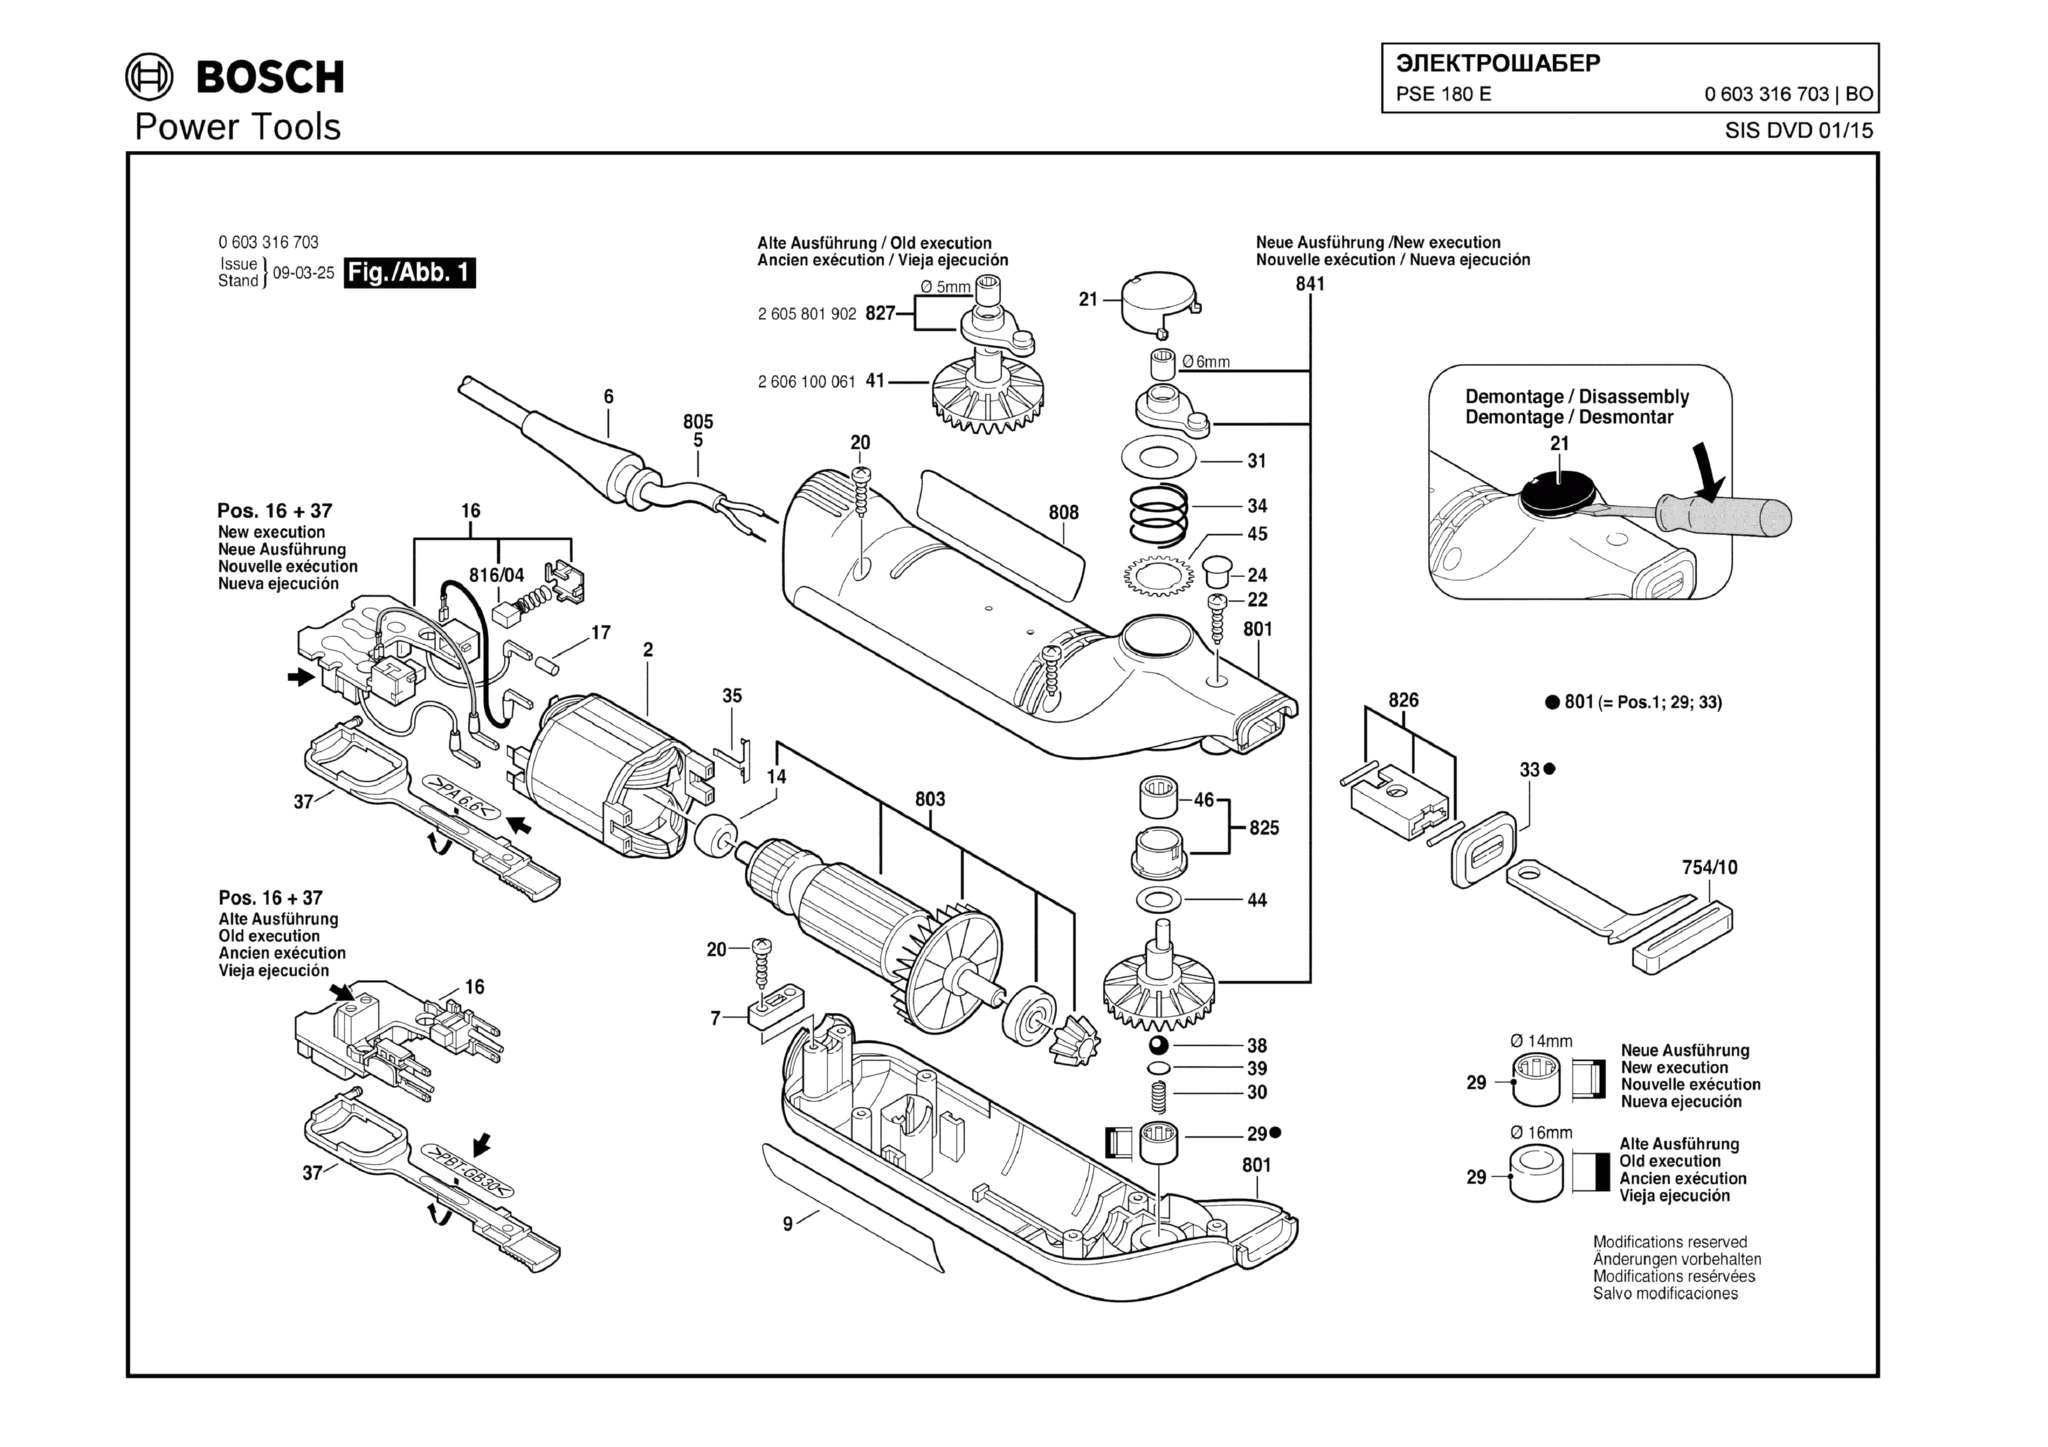 Запчасти, схема и деталировка Bosch PSE 180 E (ТИП 0603316703)